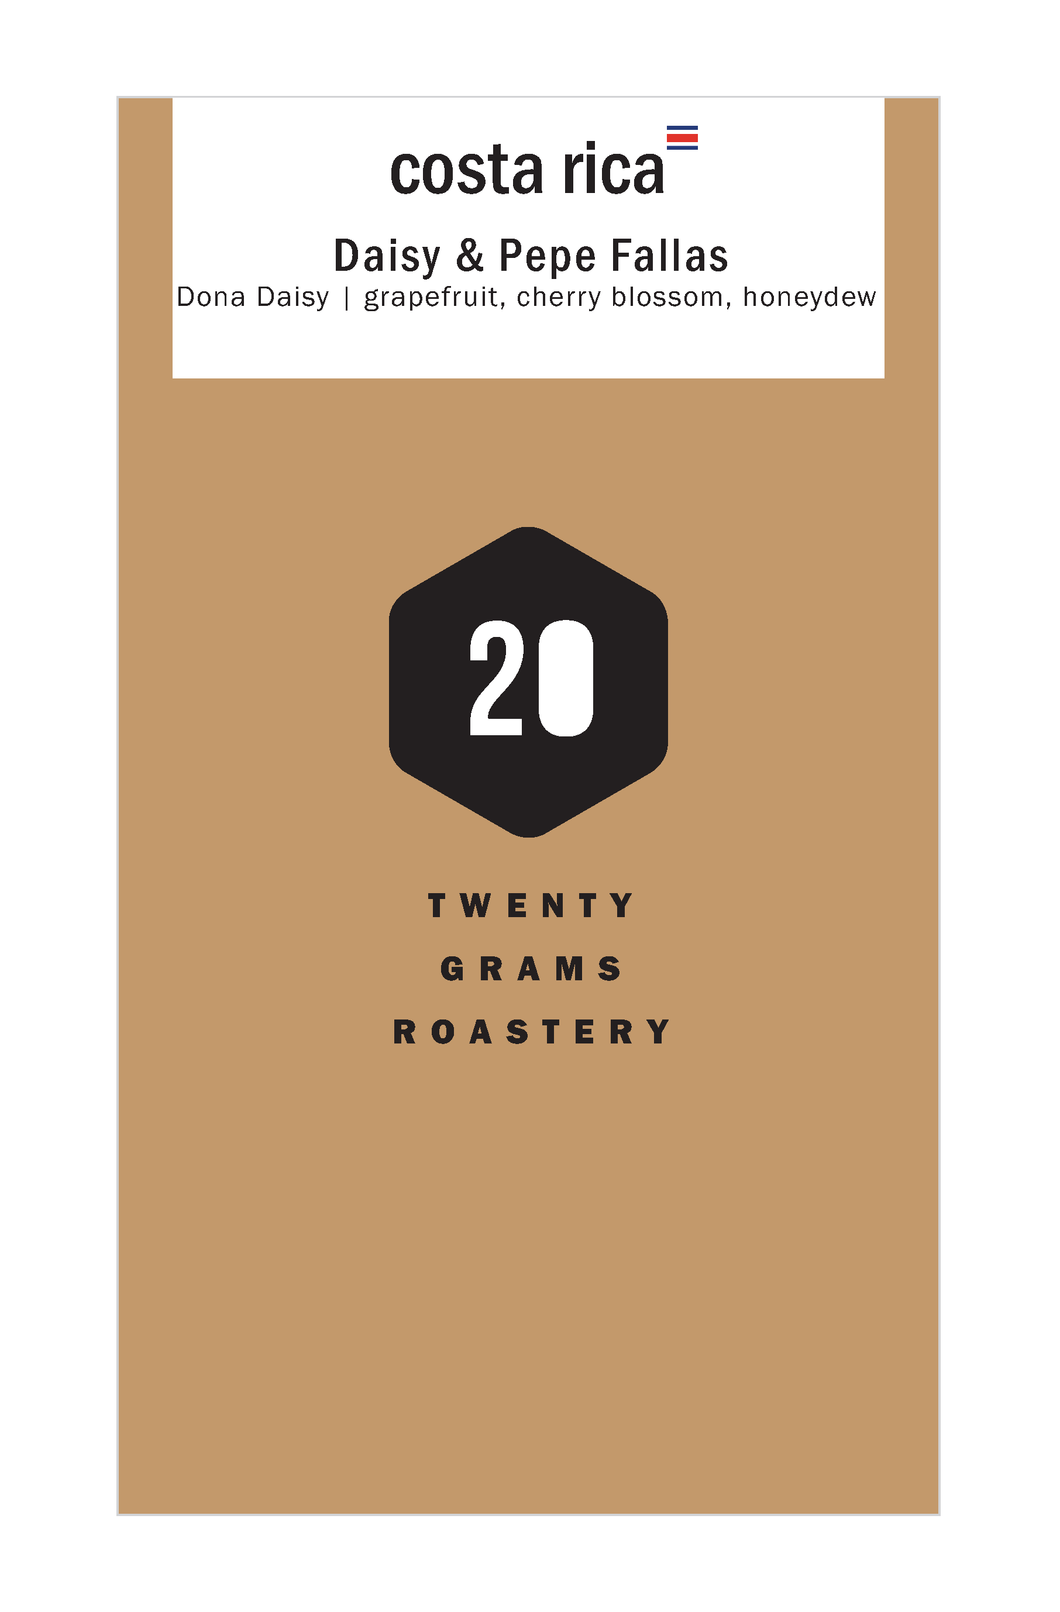 Dona Daisy - Gesha Honey - Filter